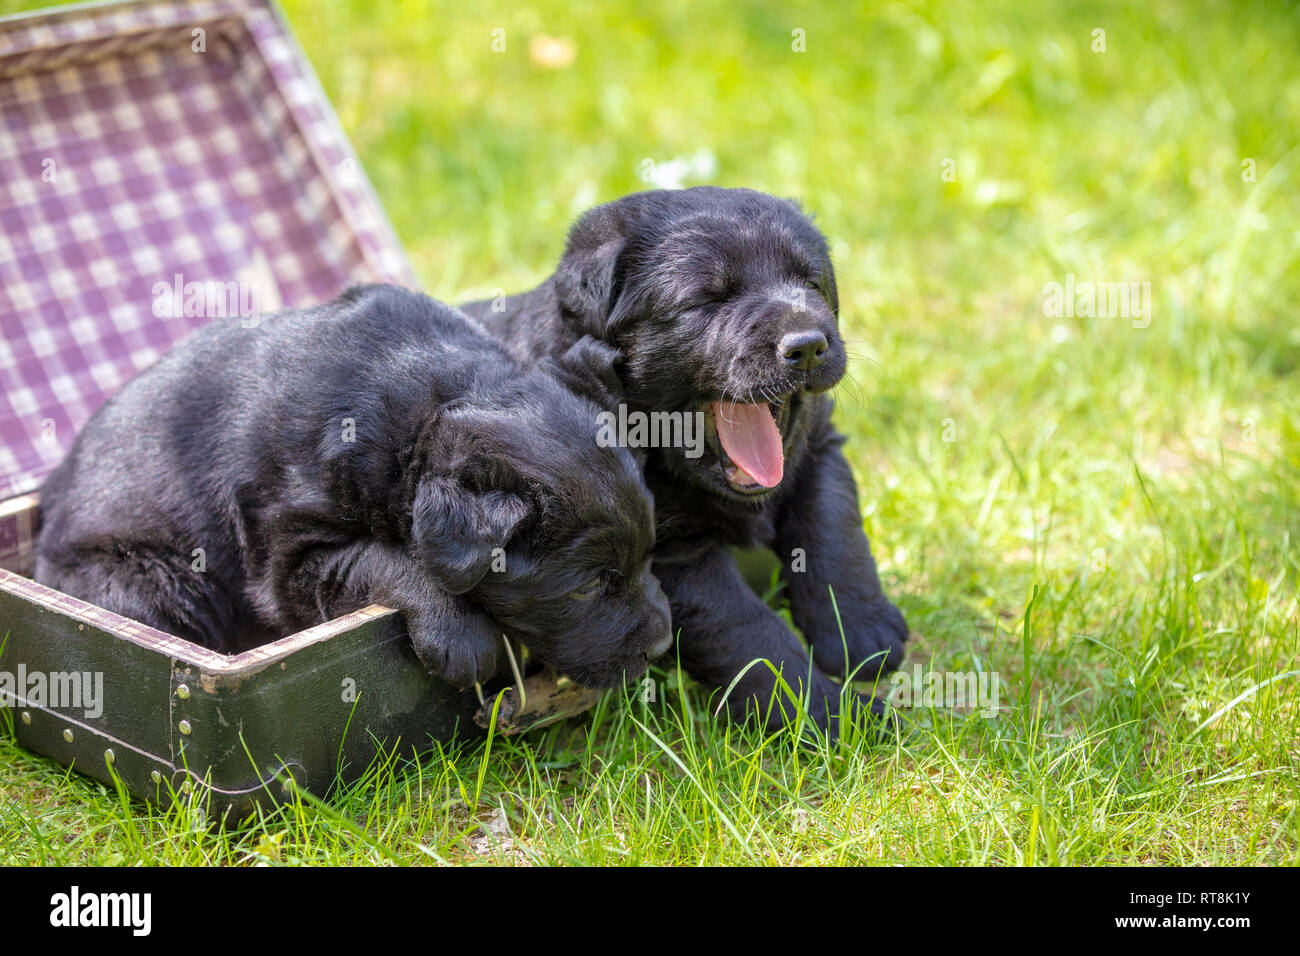 Deux chiots labrador noir s'asseoir dans une valise debout sur l'herbe dans le jardin d'été Banque D'Images